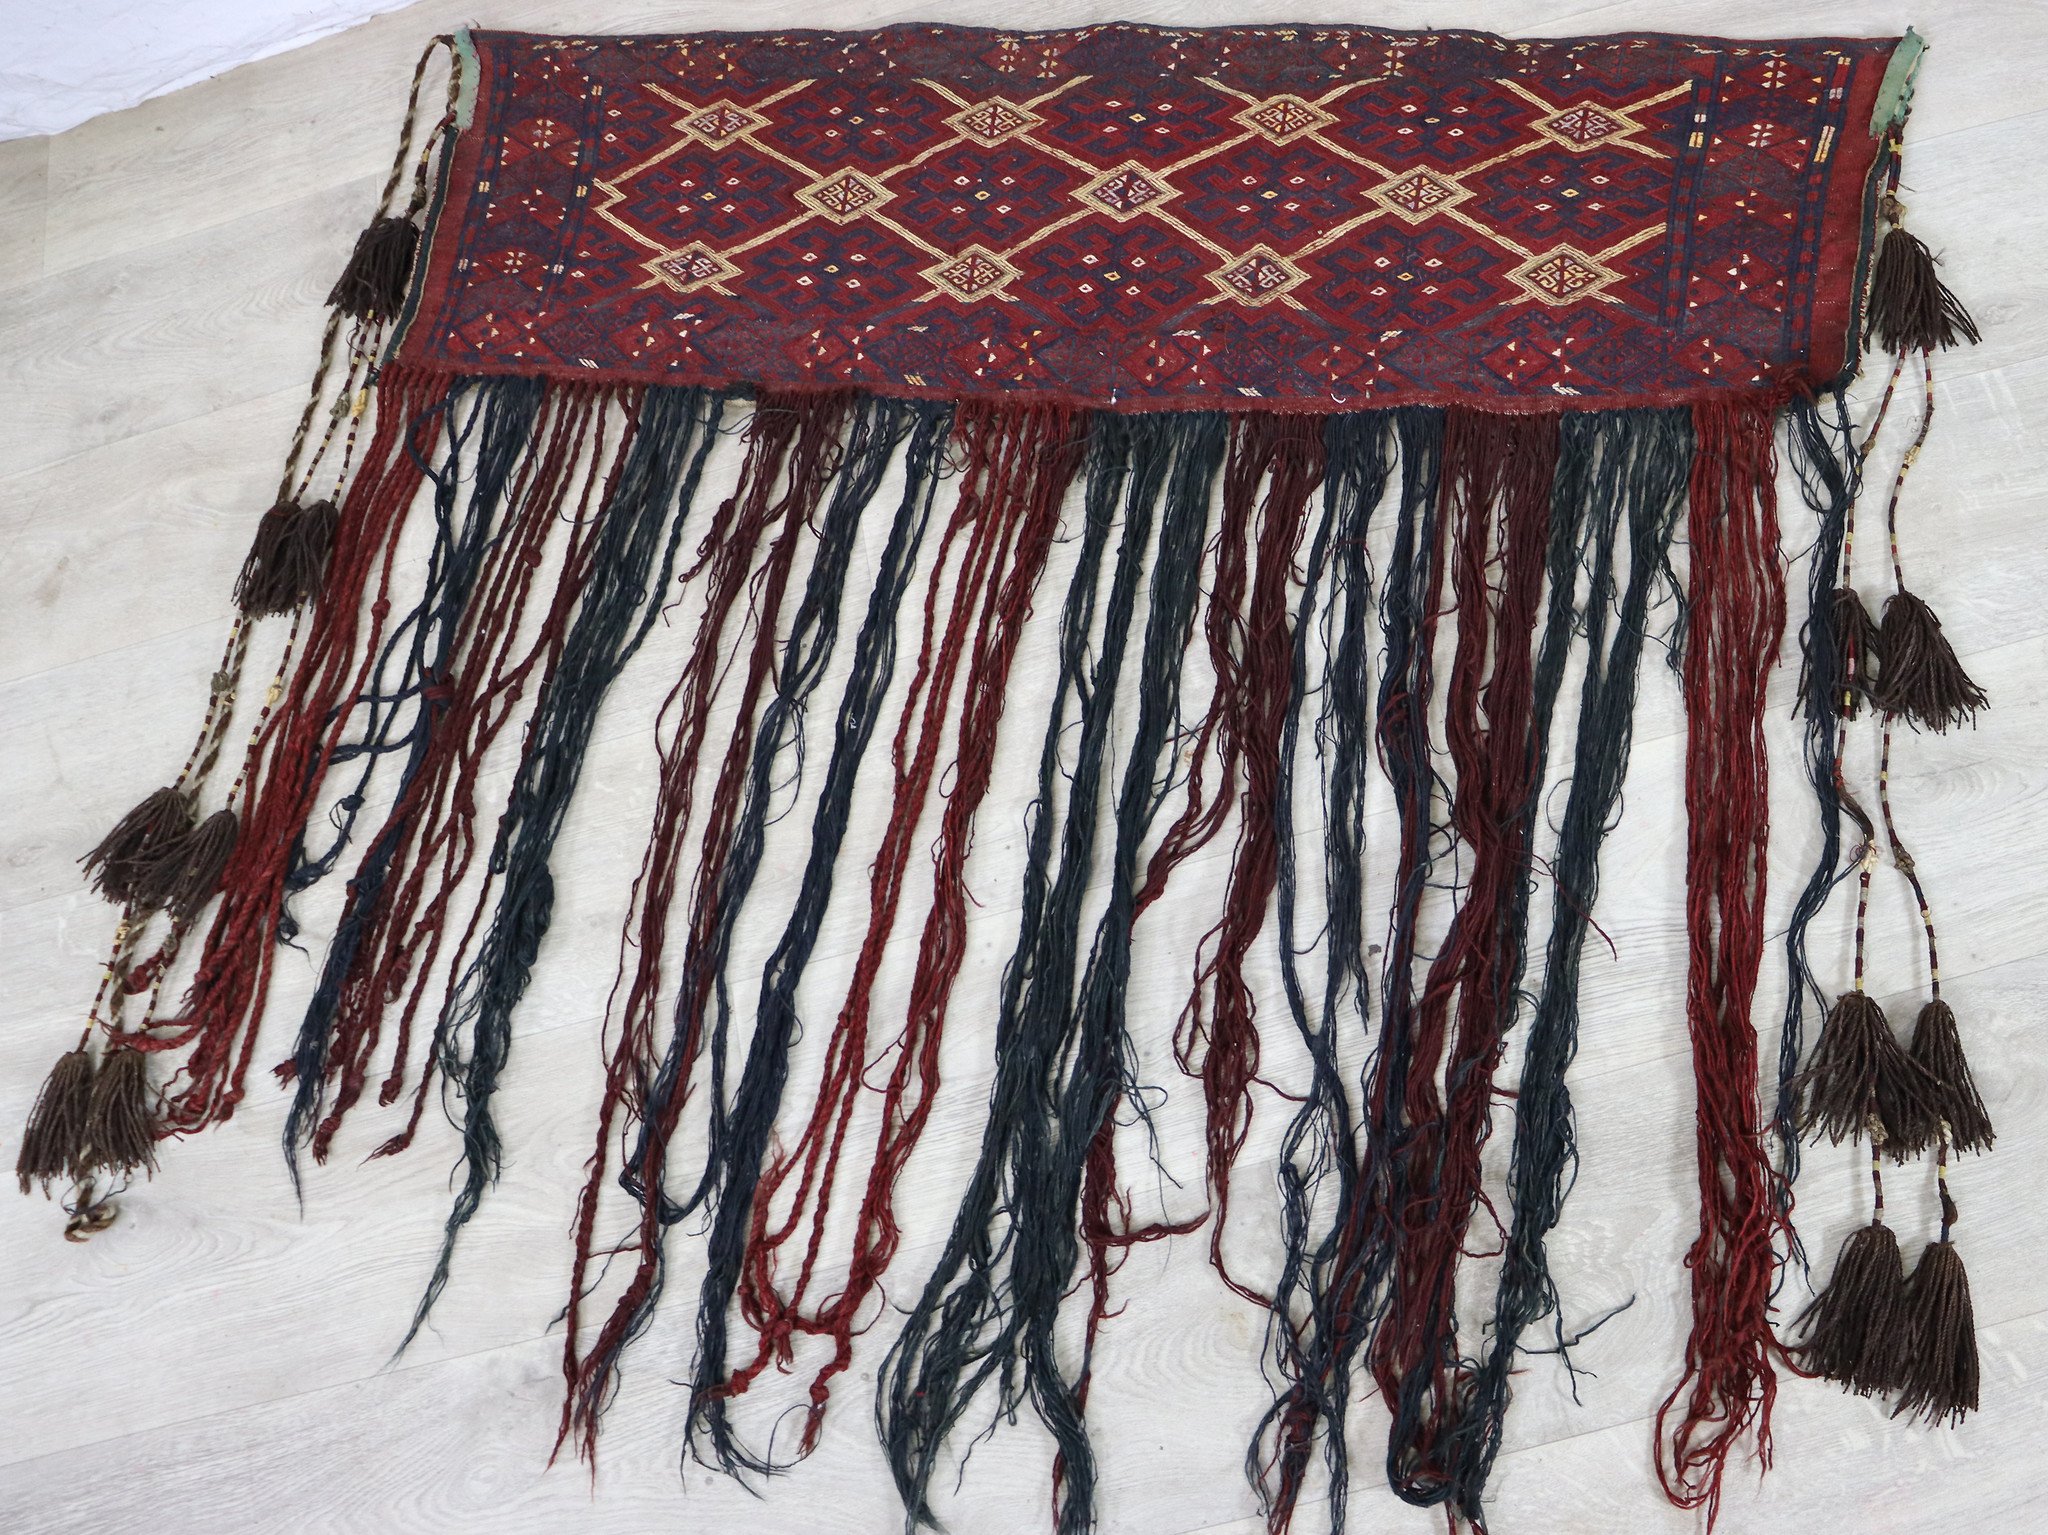 120x115 cm Antik und seltener Uzbek Nomaden Zelttasche tasche Torba aus Afghanistan Djaller Turkmenistan  Nr:22/eb3